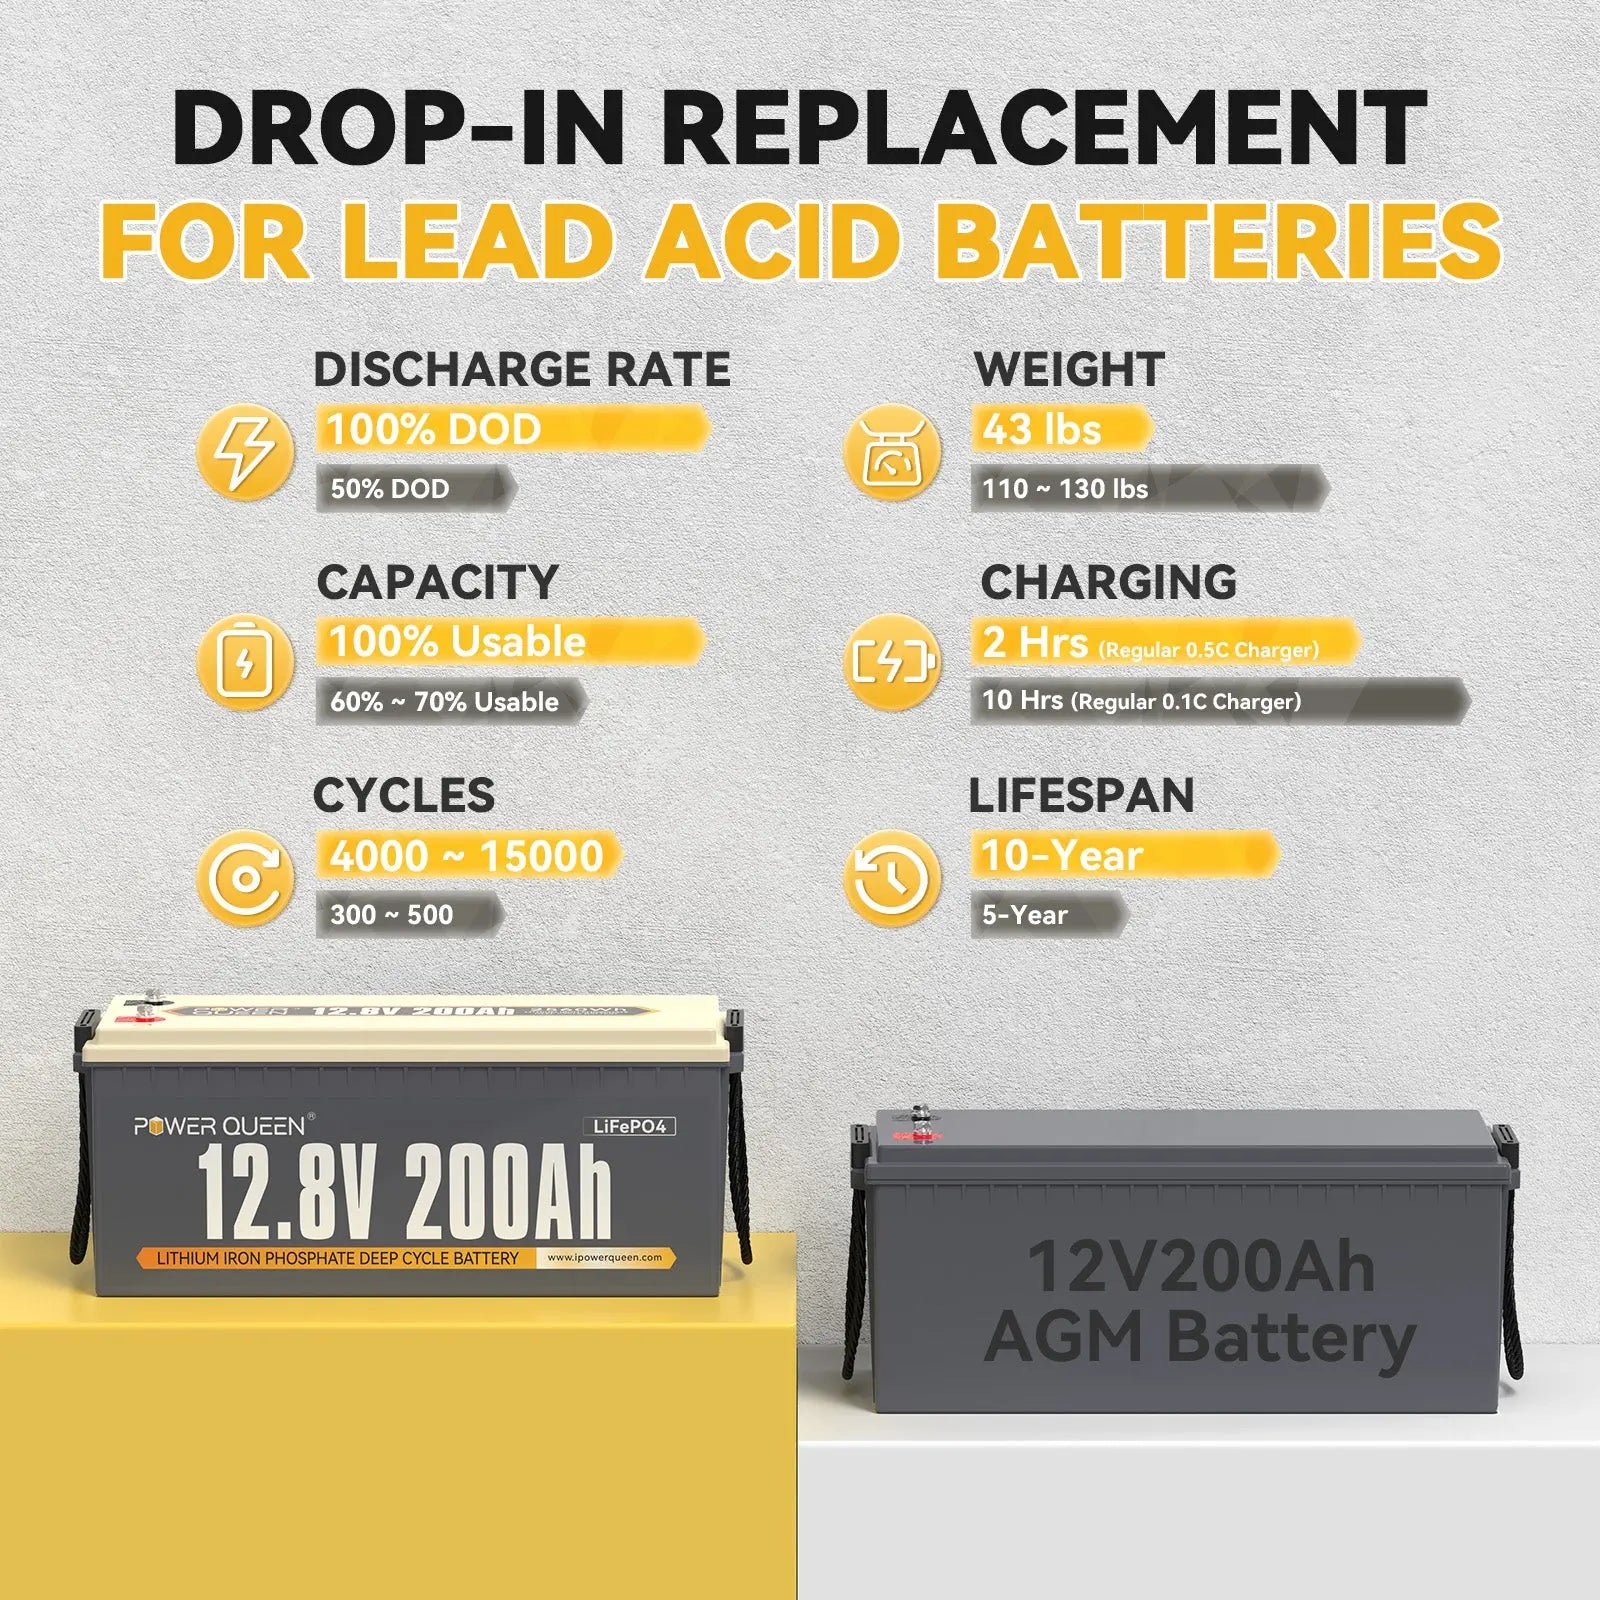 12V 200Ah lithium battery vs 12V 200Ah AGM battery